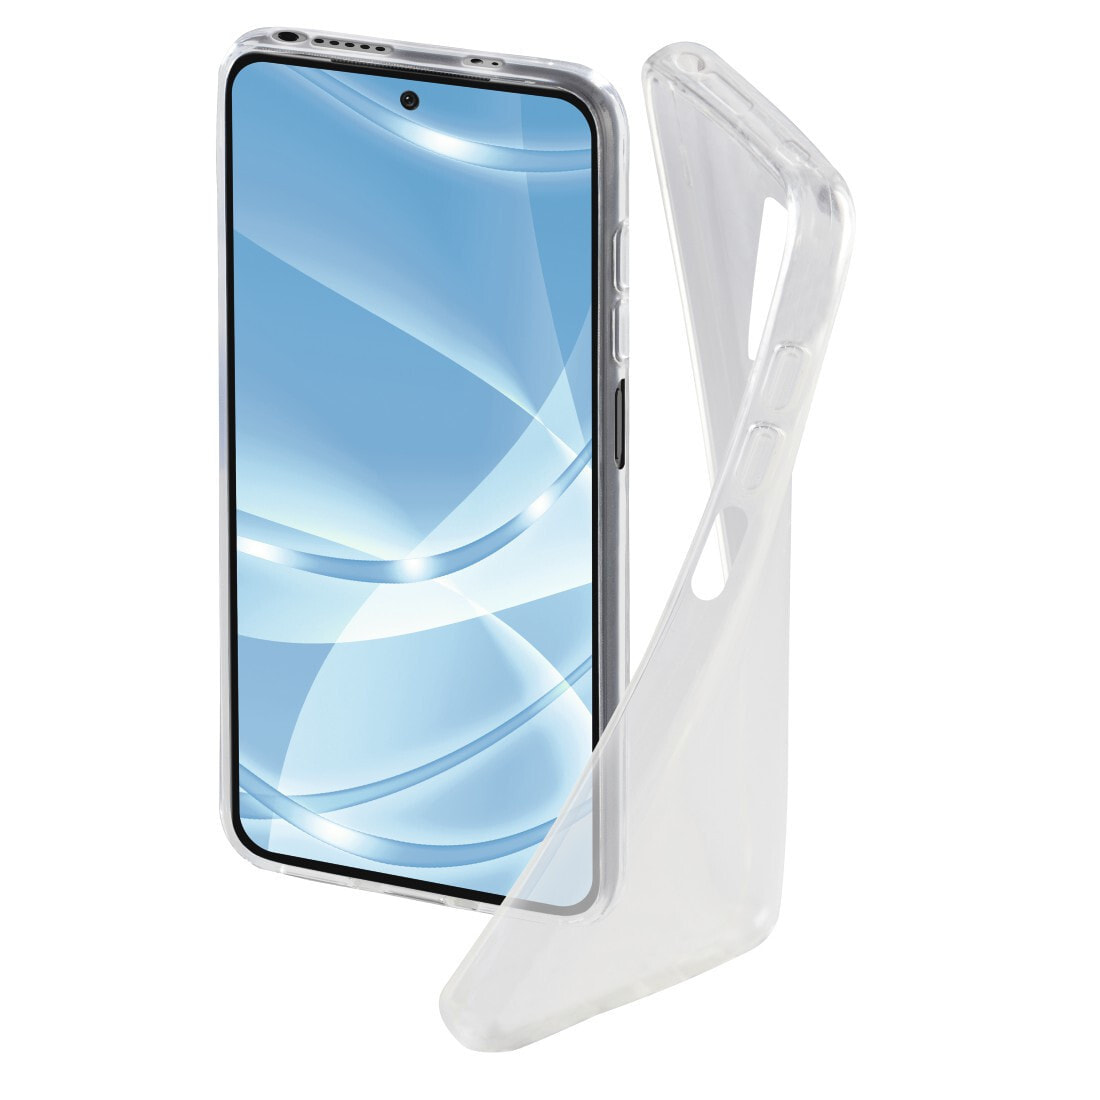 Hama Crystal Clear чехол для мобильного телефона 16,3 cm (6.43